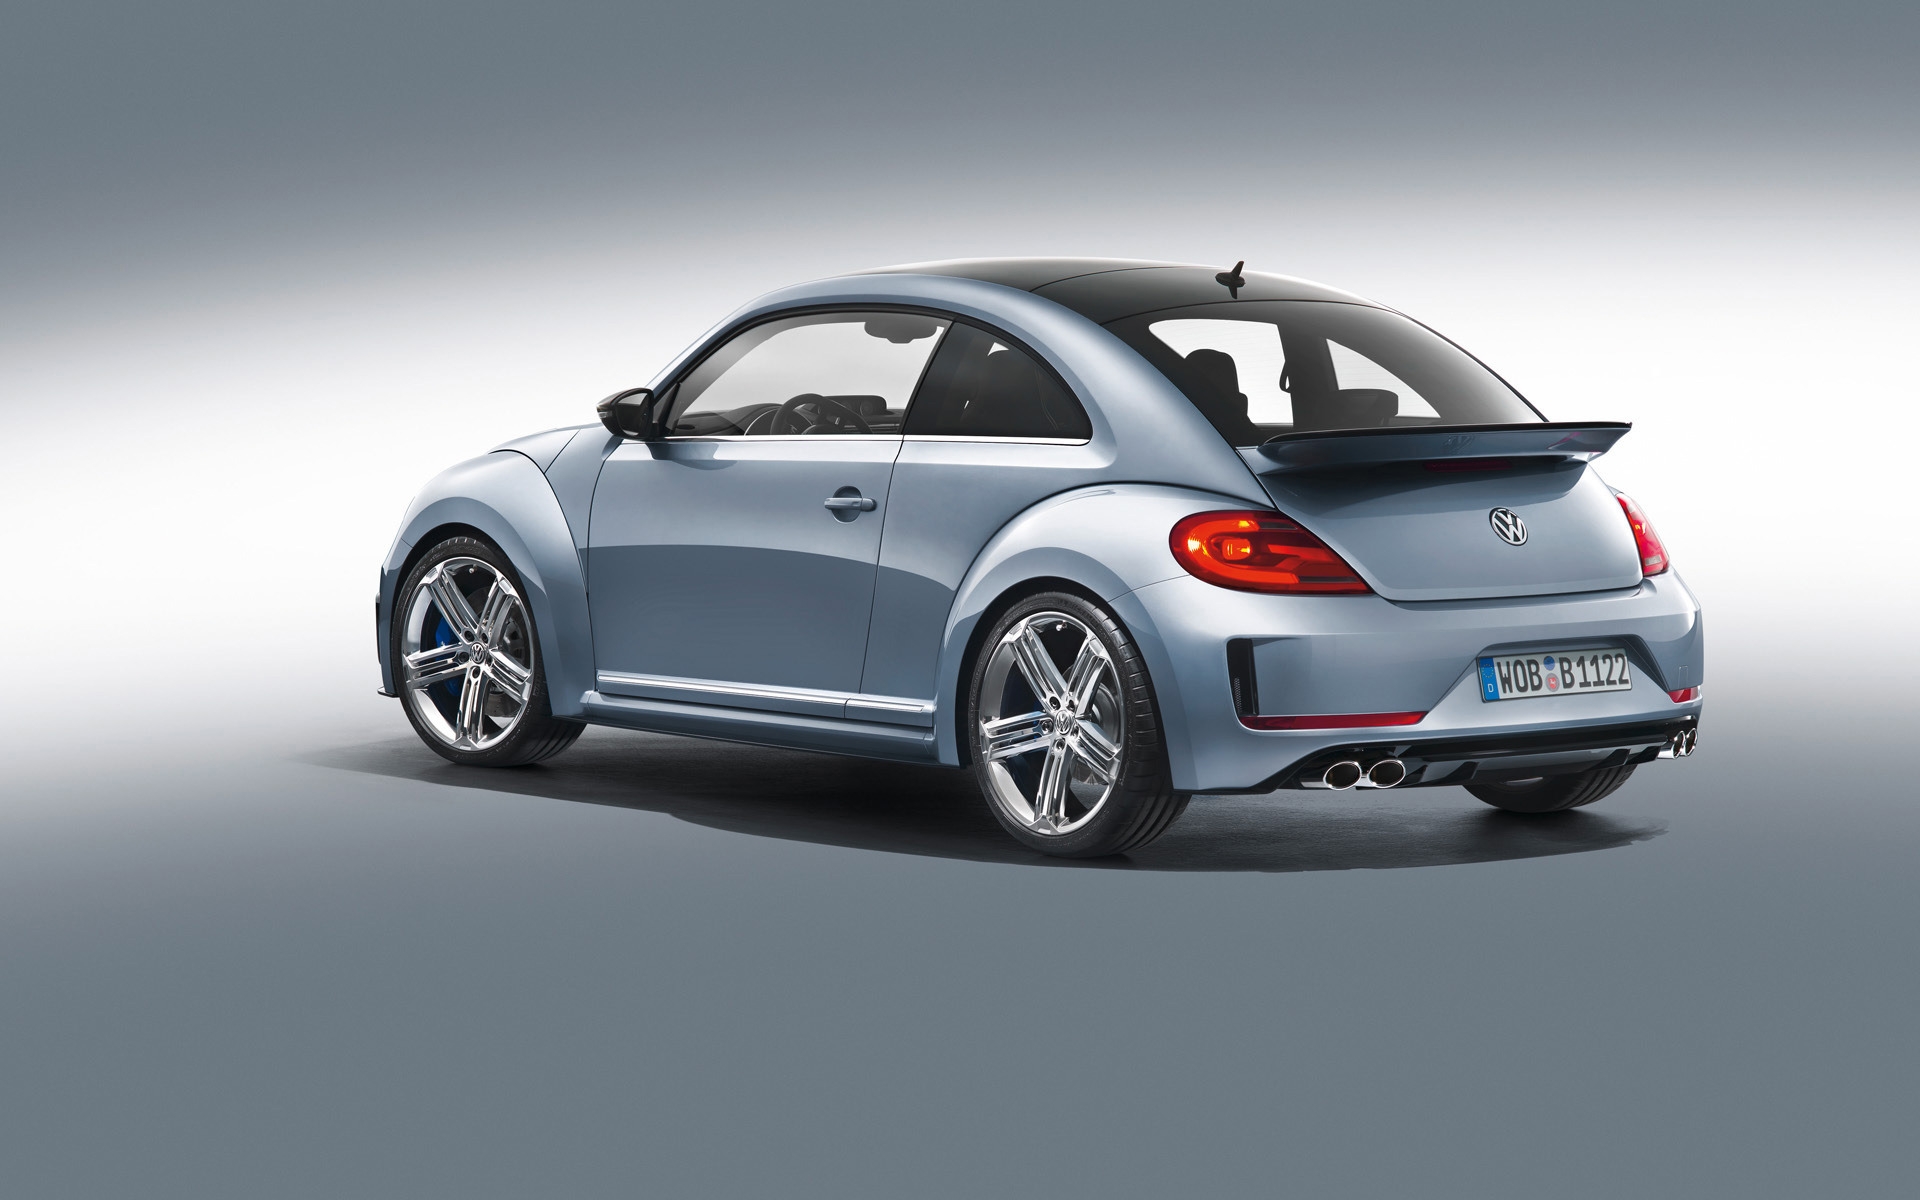 2011 Volkswagen Beetle R Concept Studio for 1920 x 1200 widescreen resolution